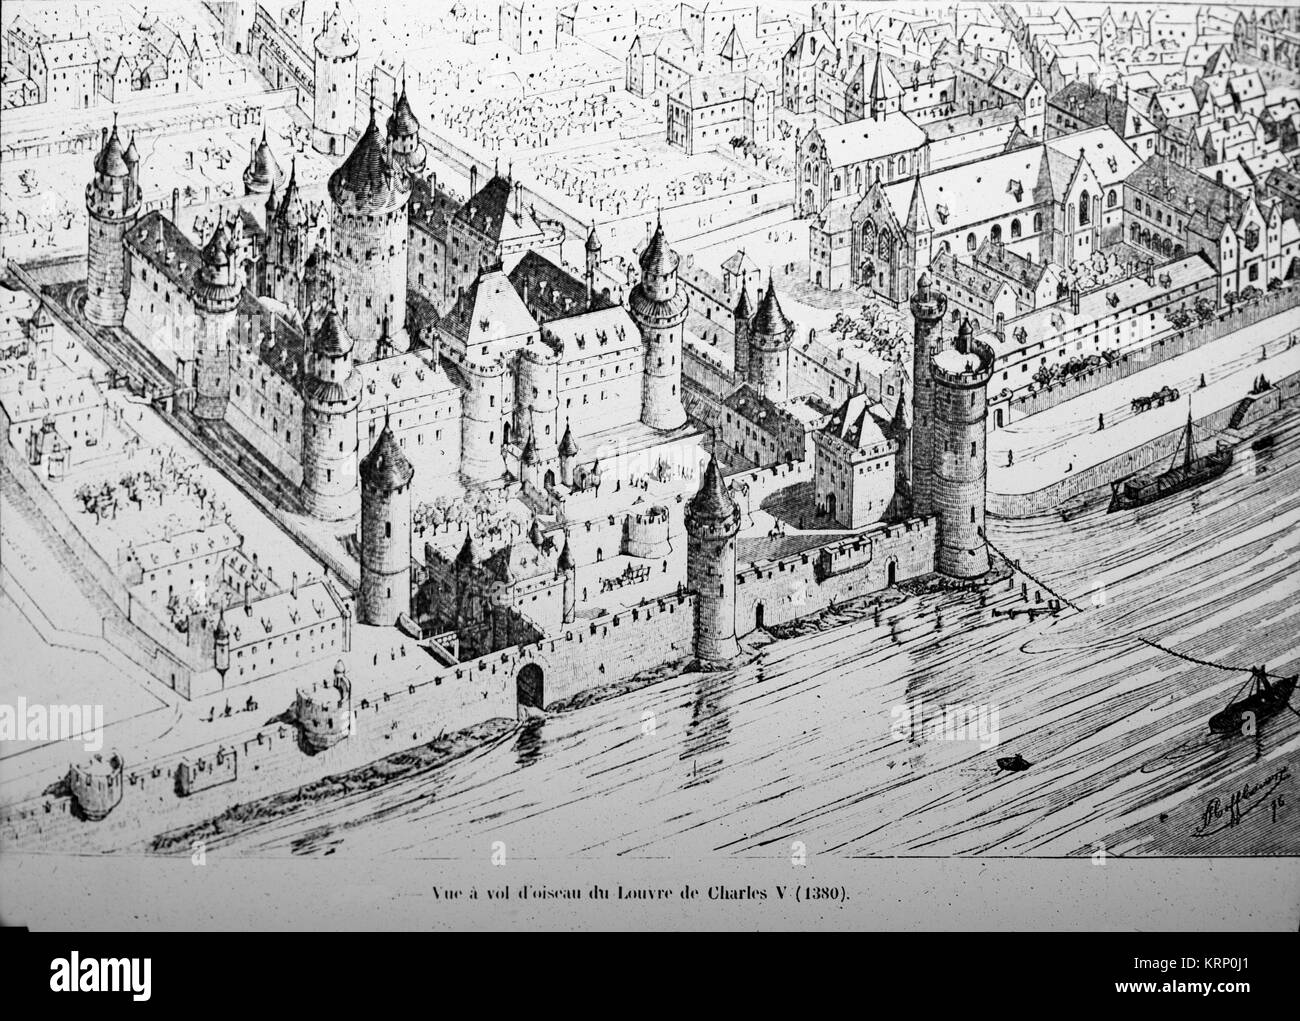 Gravure en noir et blanc montrant le Louvre à Paris, France autour de 1380, l'époque du roi Charles V. Banque D'Images